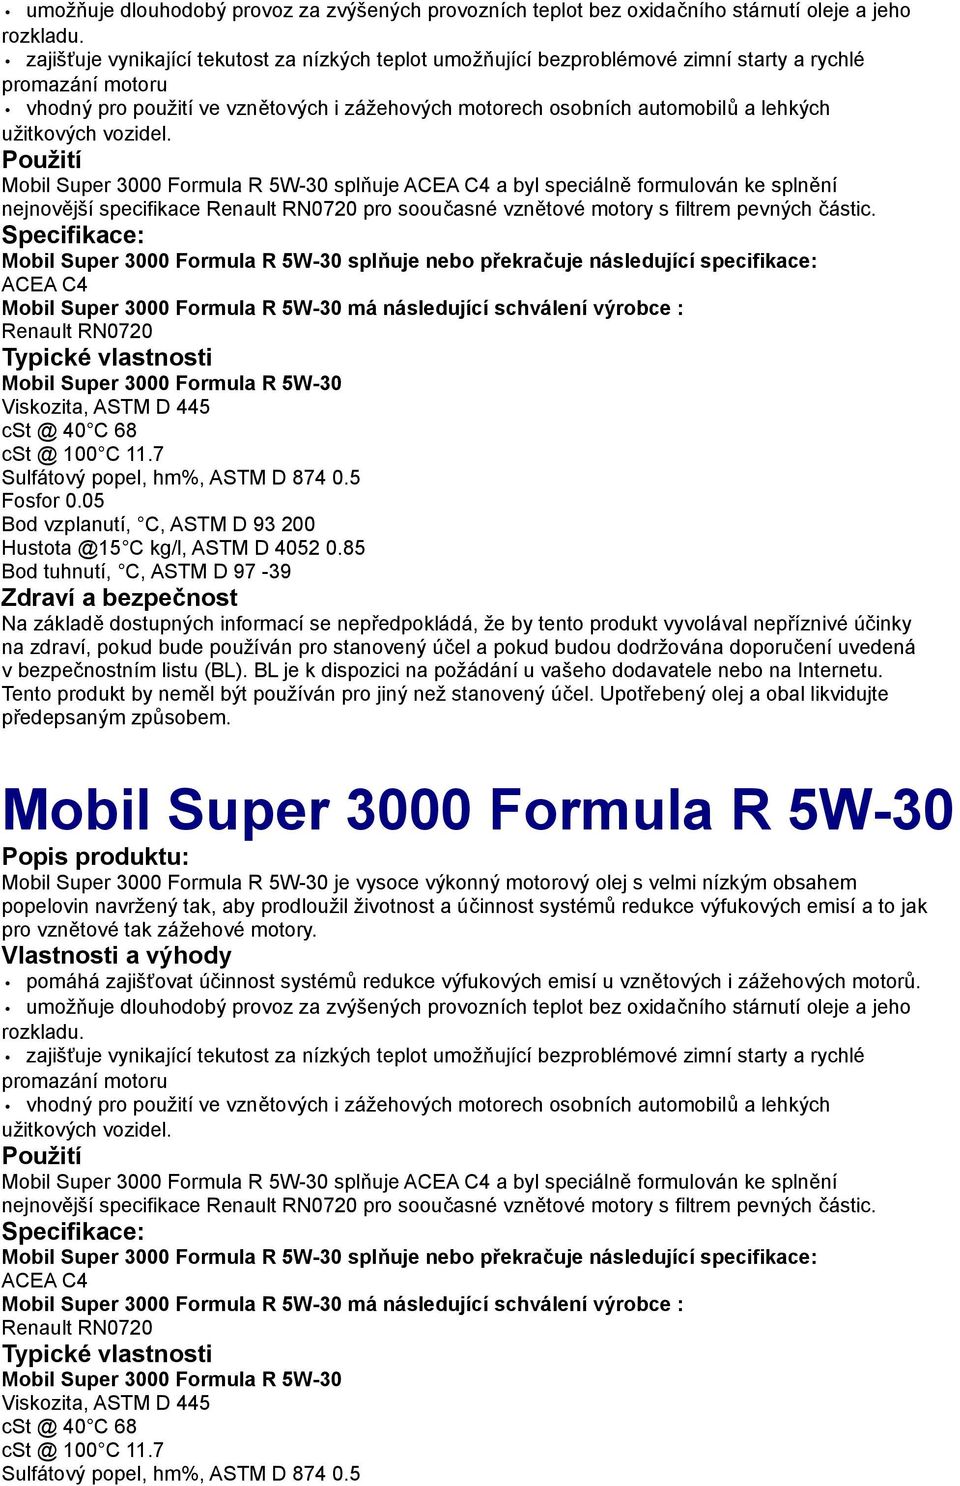 užitkových vozidel. Mobil Super 3000 Formula R 5W-30 splňuje ACEA C4 a byl speciálně formulován ke splnění nejnovější specifikace Renault RN0720 pro sooučasné vznětové motory s filtrem pevných částic.